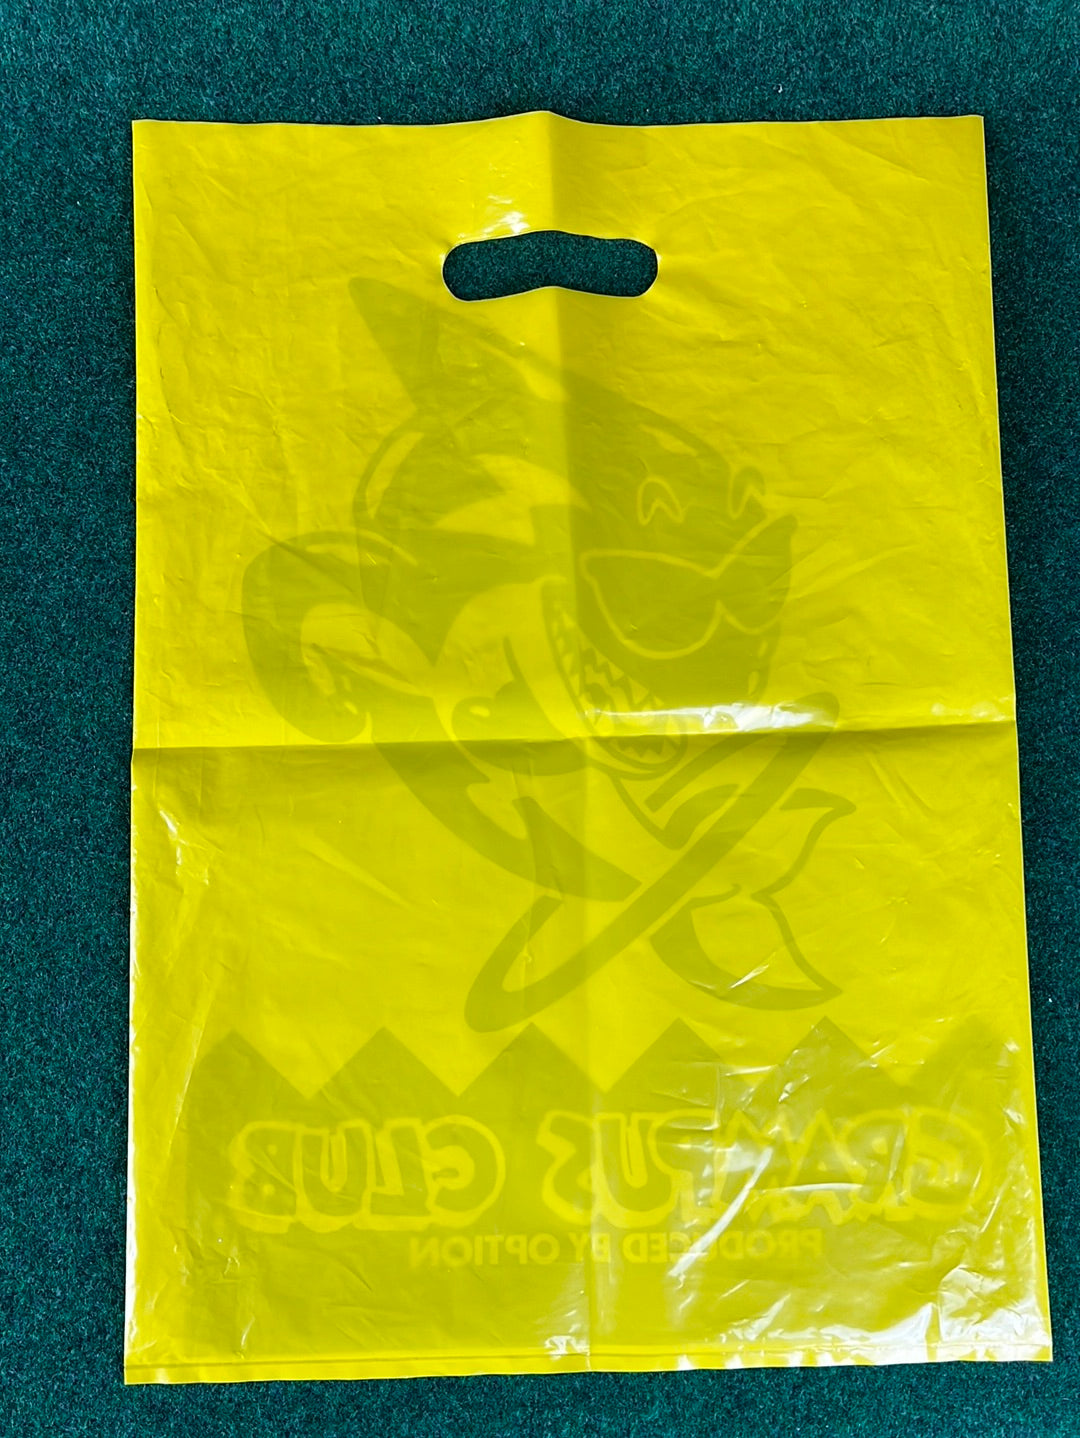 Option Grampus Club - Literature Plastic Bag